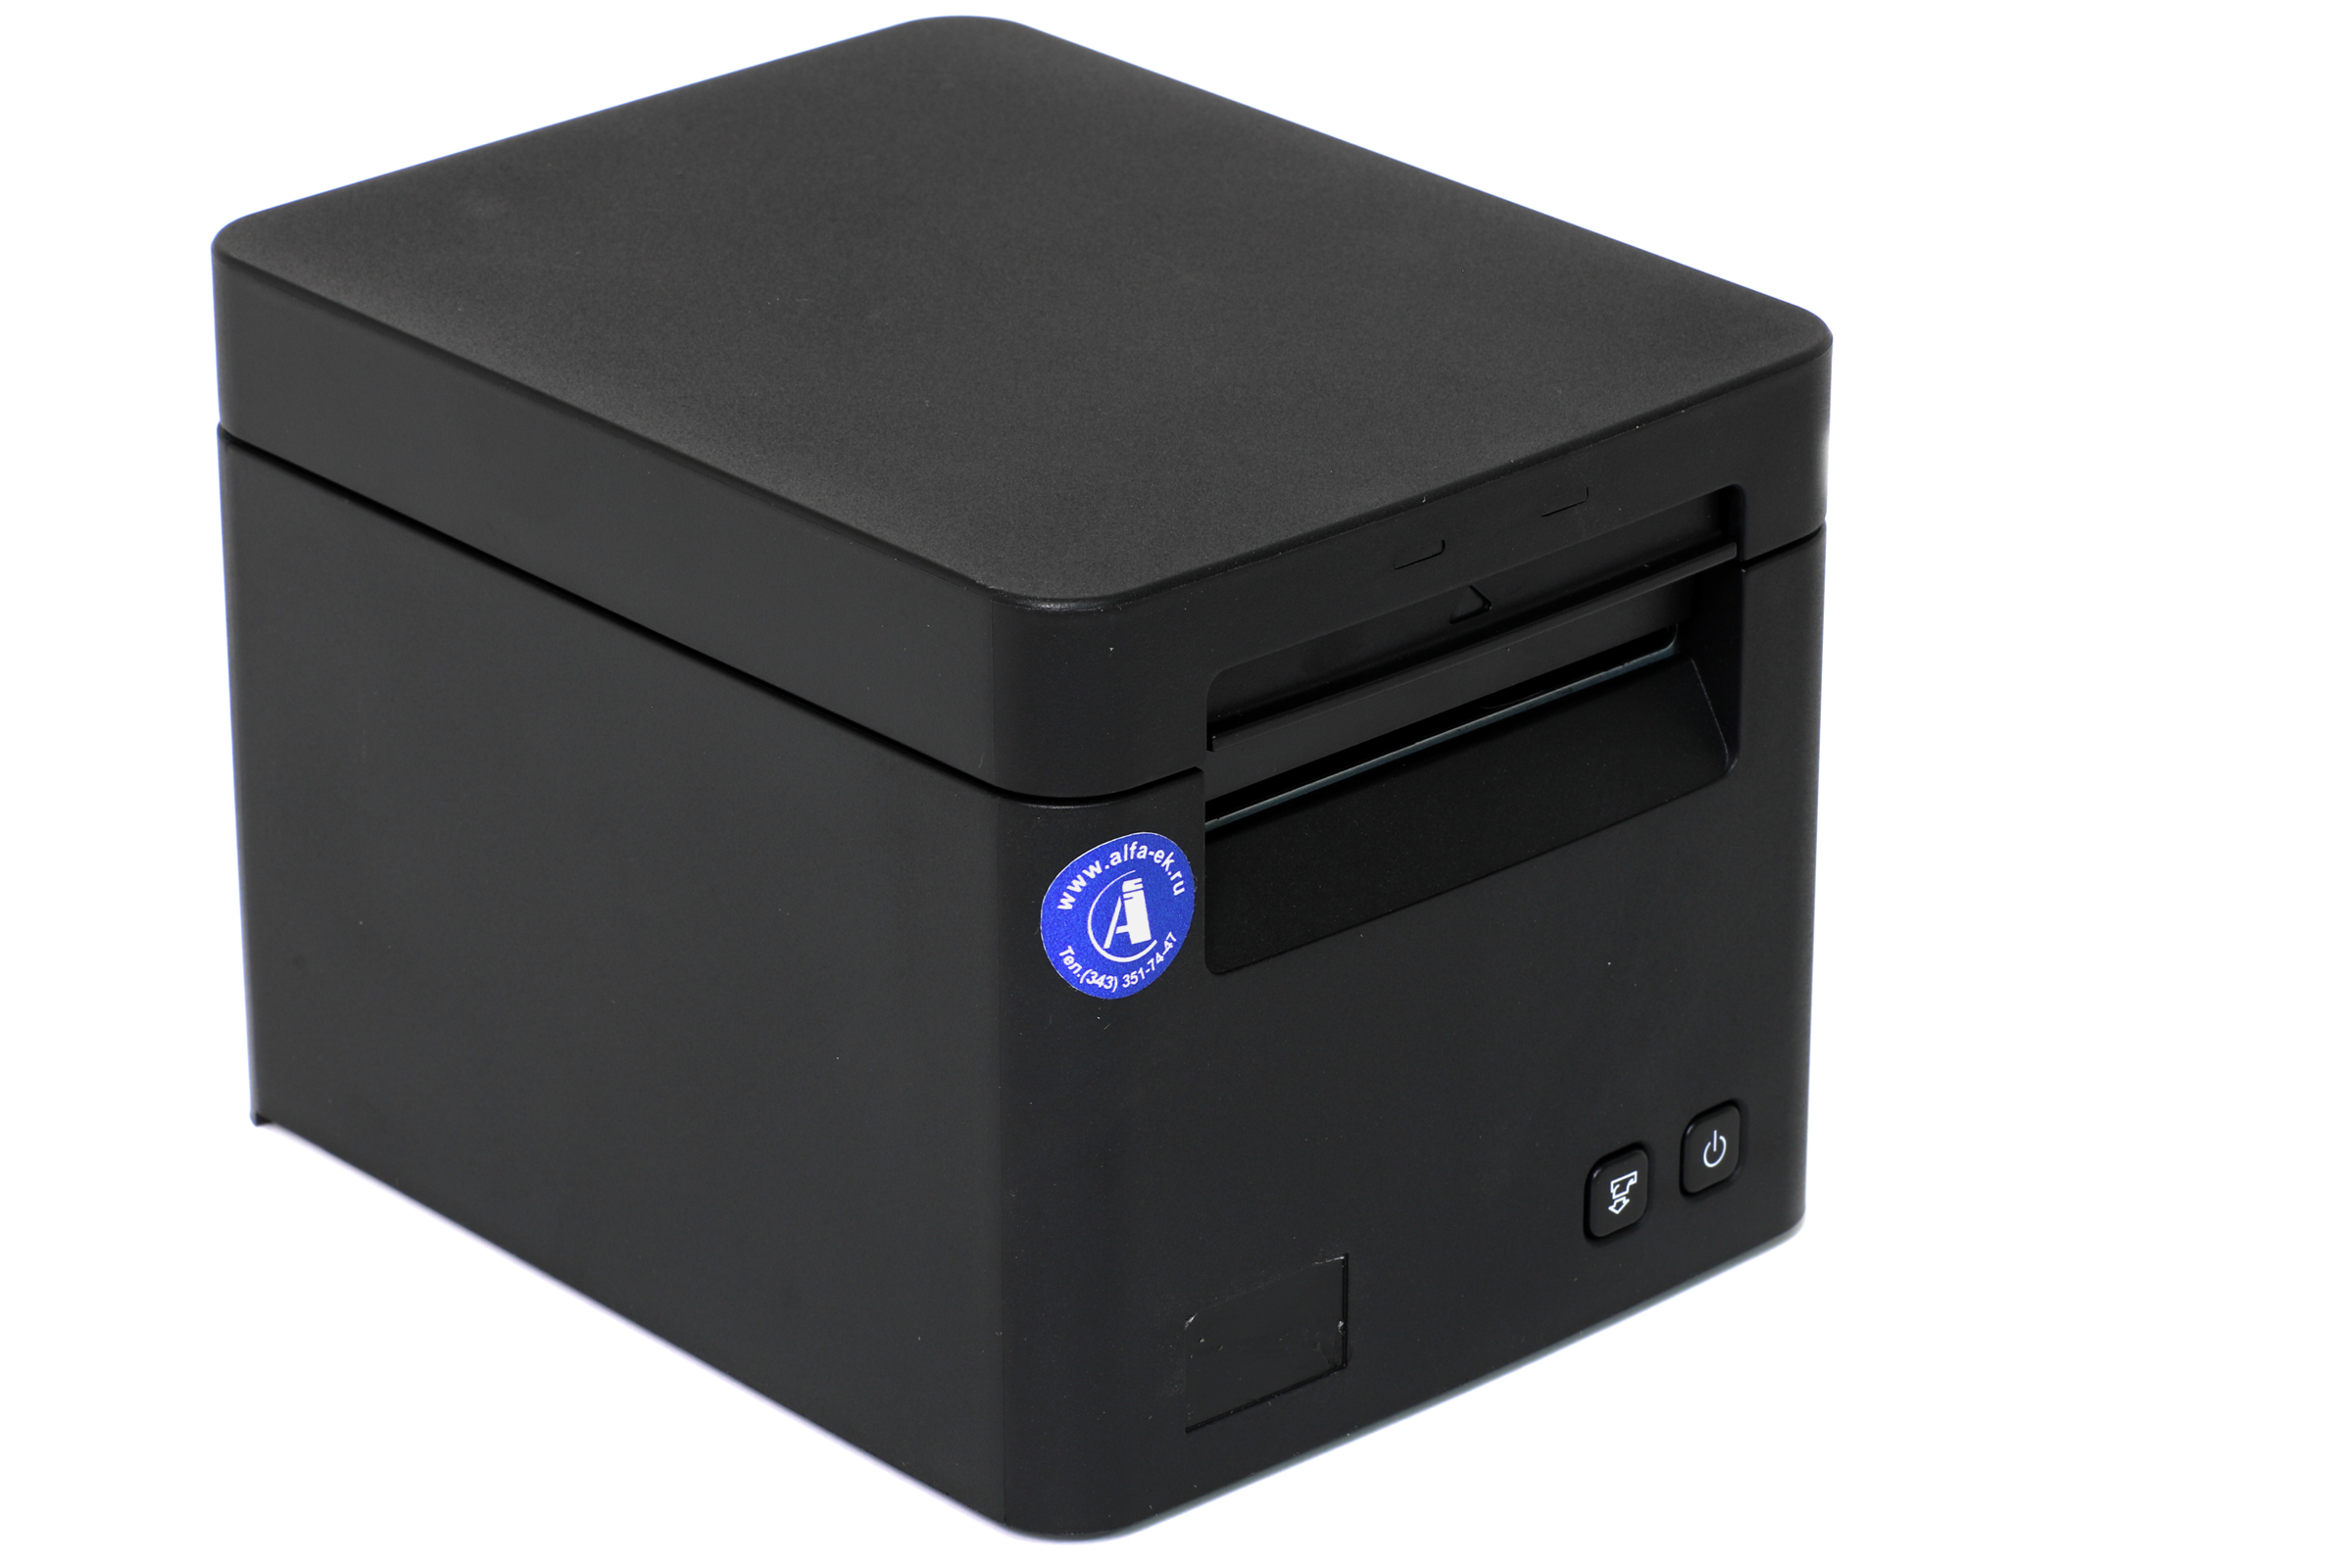 Принтер чеков POSCENTER SP9 USB, LAN, разъём под ДЯ, чёрный